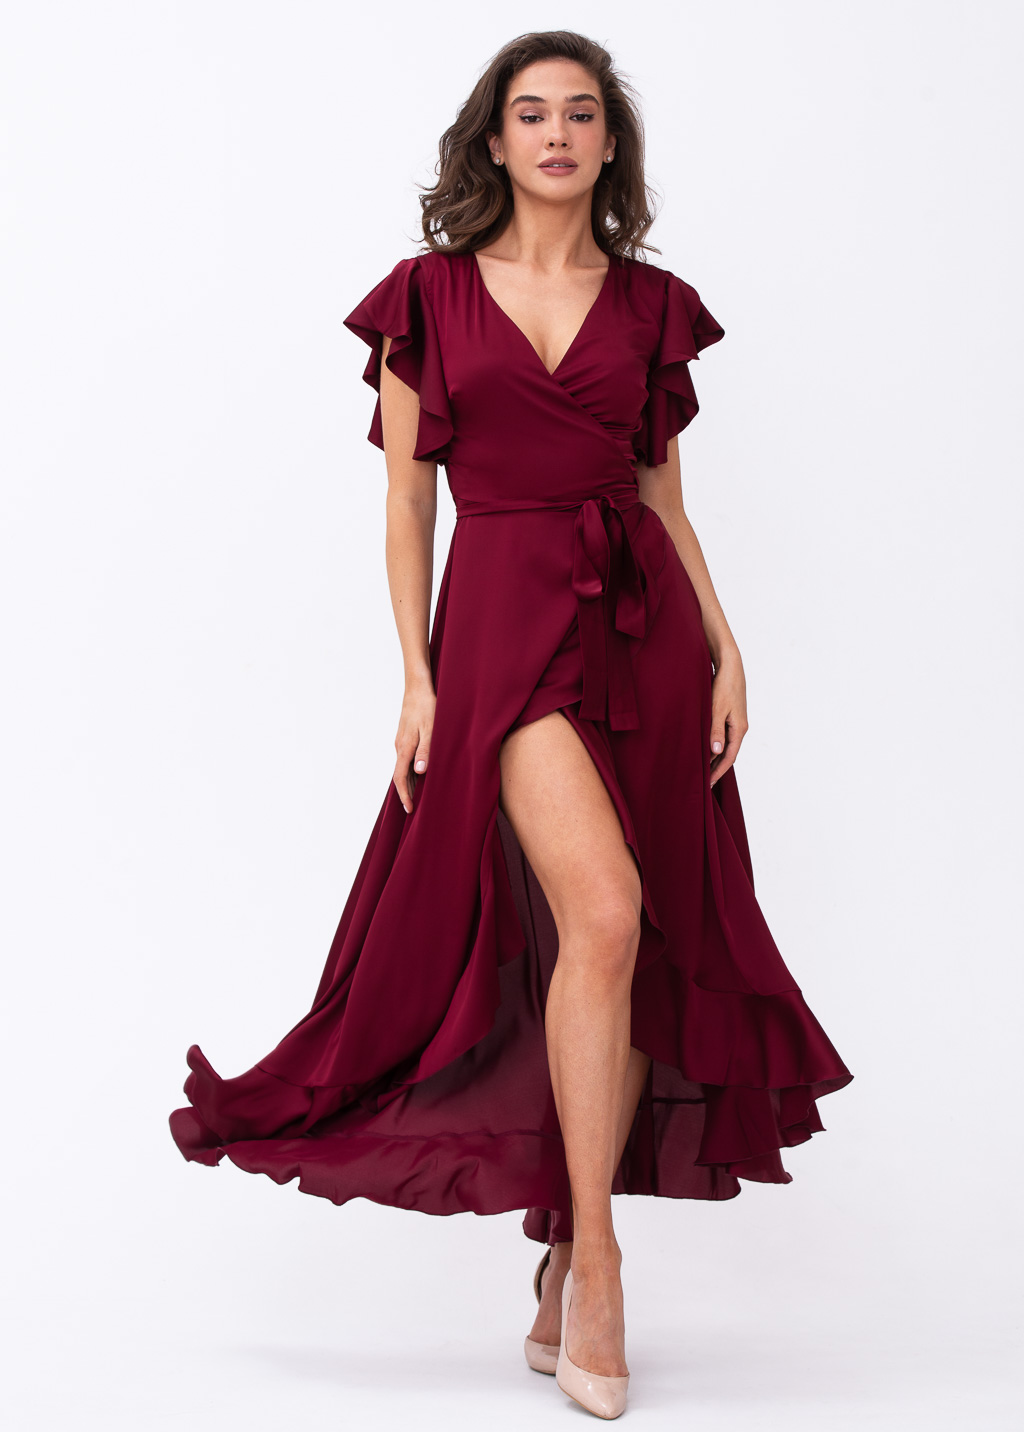 Burgundy wrap dress